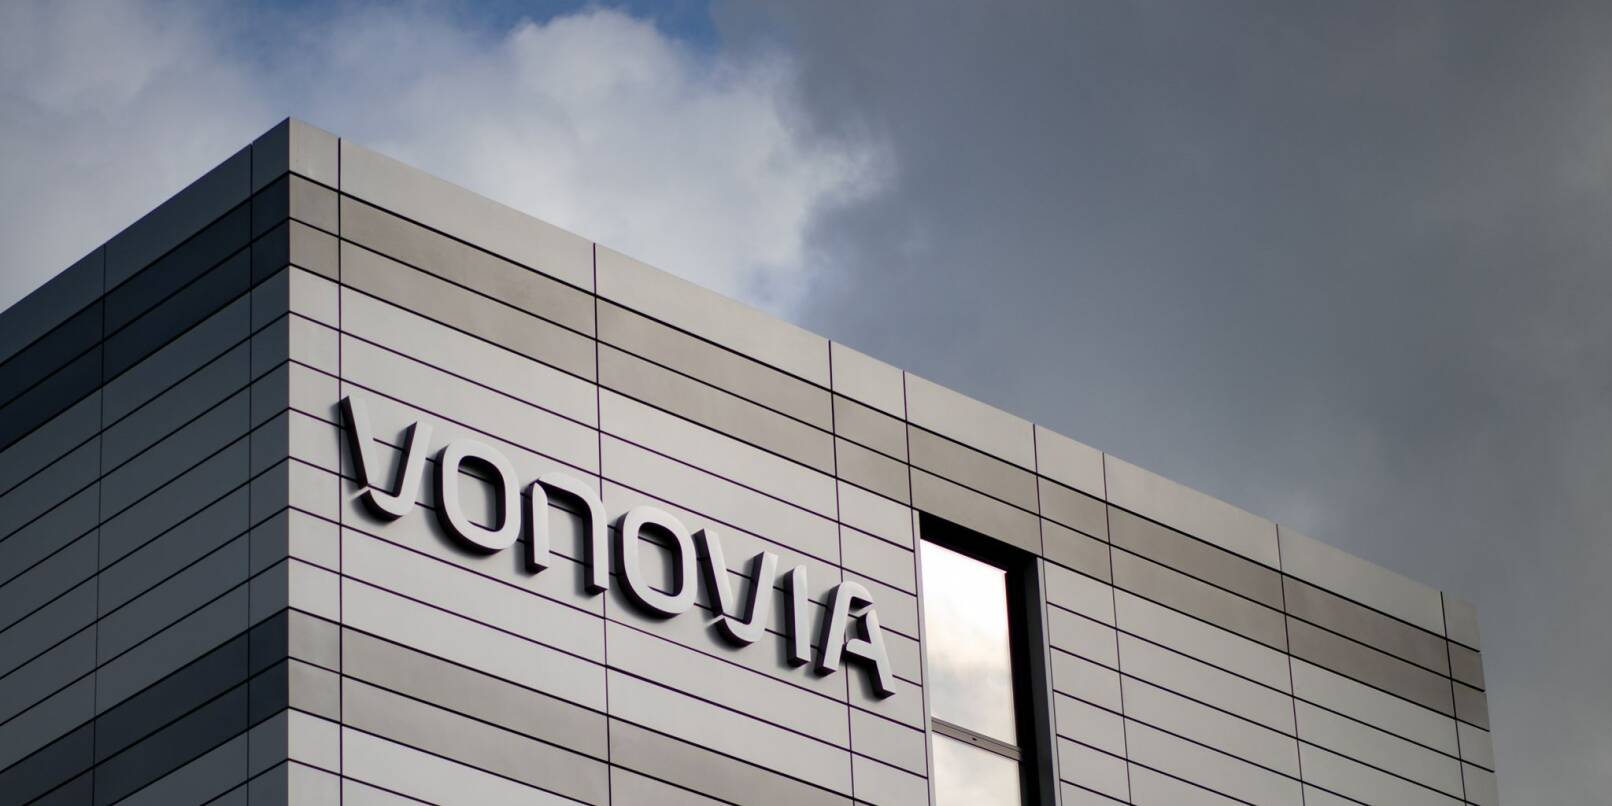 Vonovia besitzt in Deutschland, Schweden und Österreich knapp 550.000 Wohnungen.